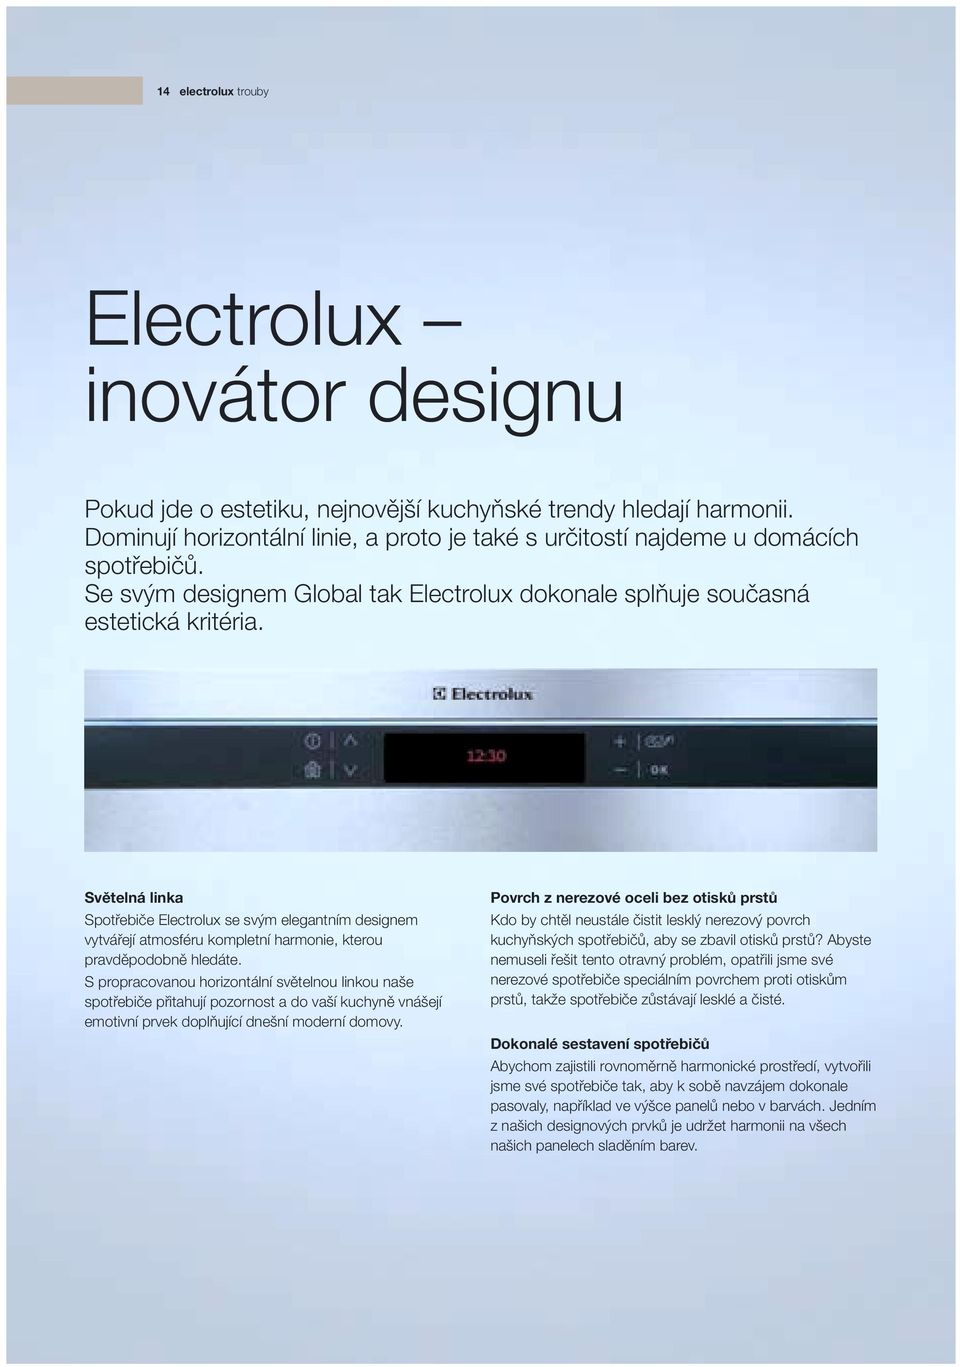 Světelná linka Spotřebiče Electrolux se svým elegantním designem vytvářejí atmosféru kompletní harmonie, kterou pravděpodobně hledáte.